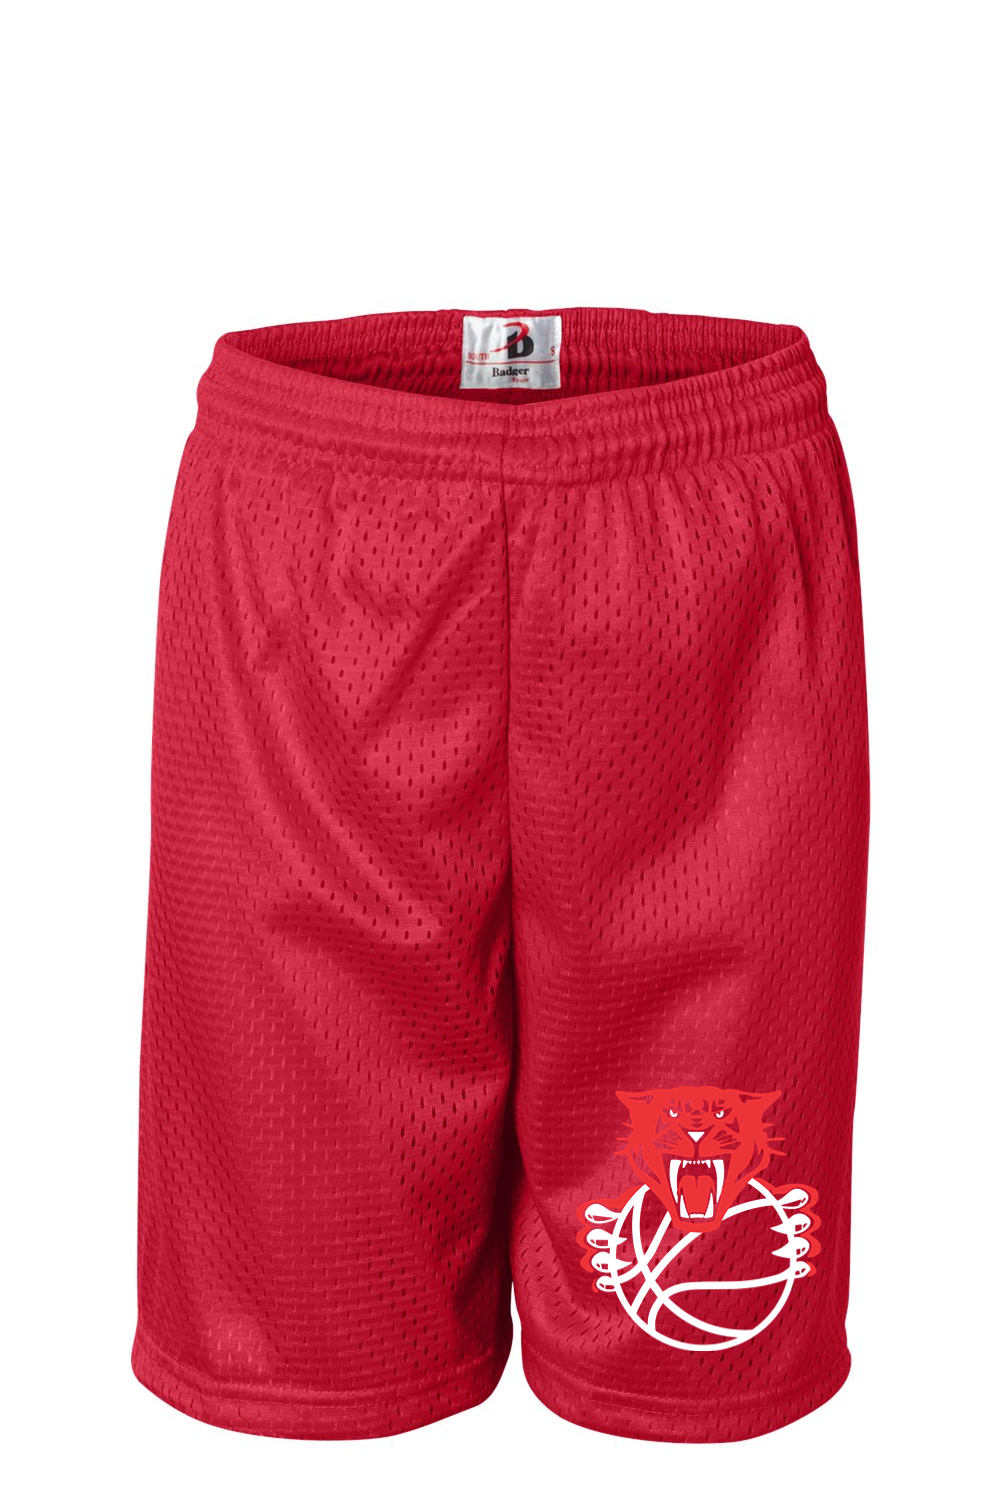 Sabers Basketball Badger Youth Pro Mesh 6" Shorts